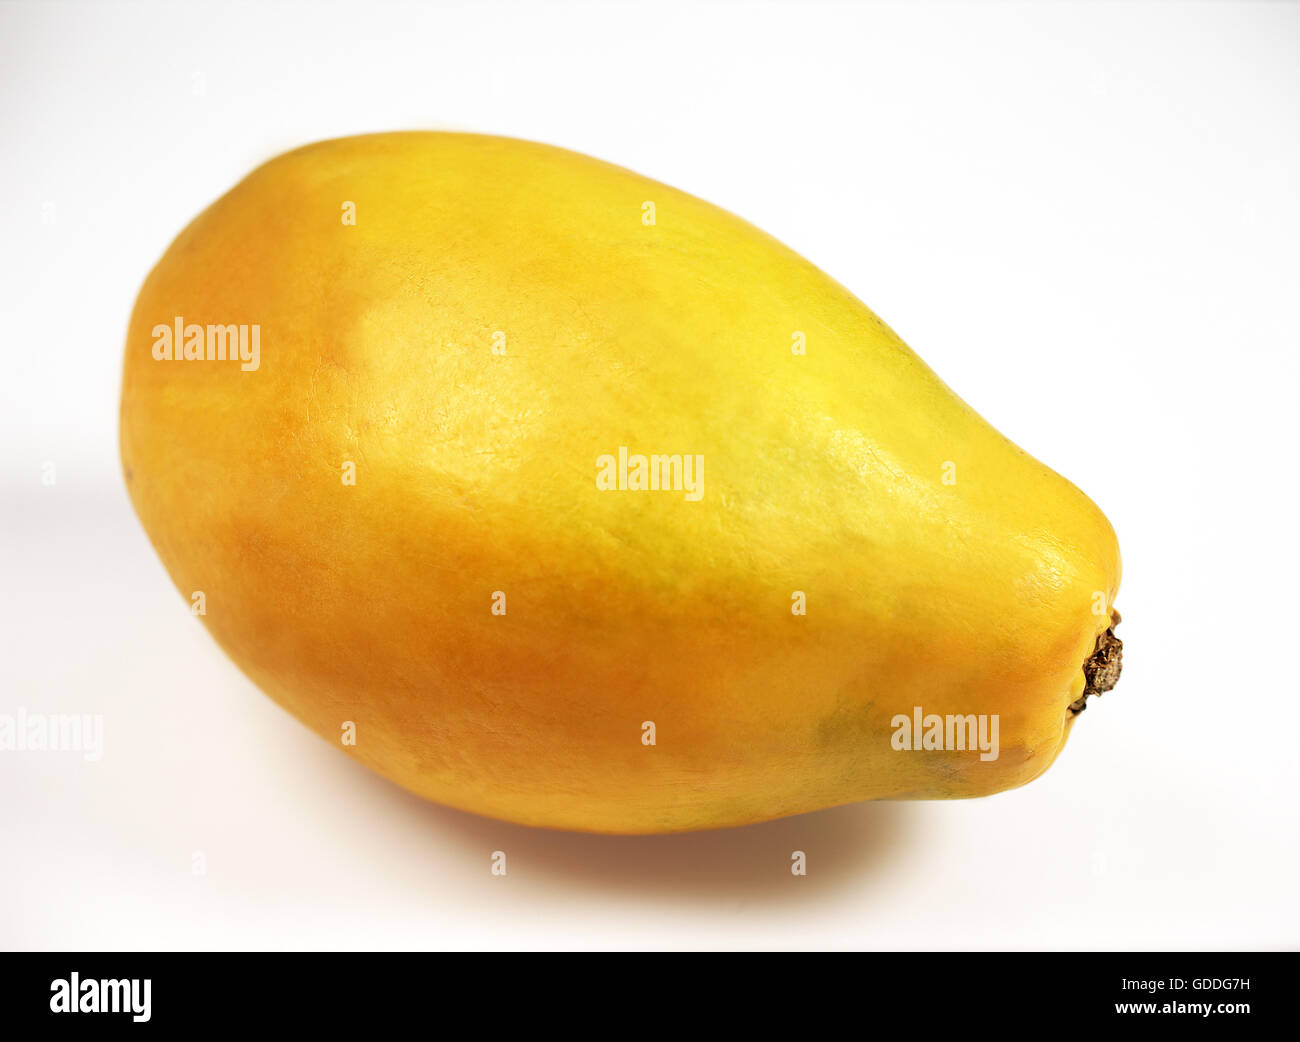 Paw Paw or Papaya, carica papaya, Exotic Fruit against White Background Stock Photo